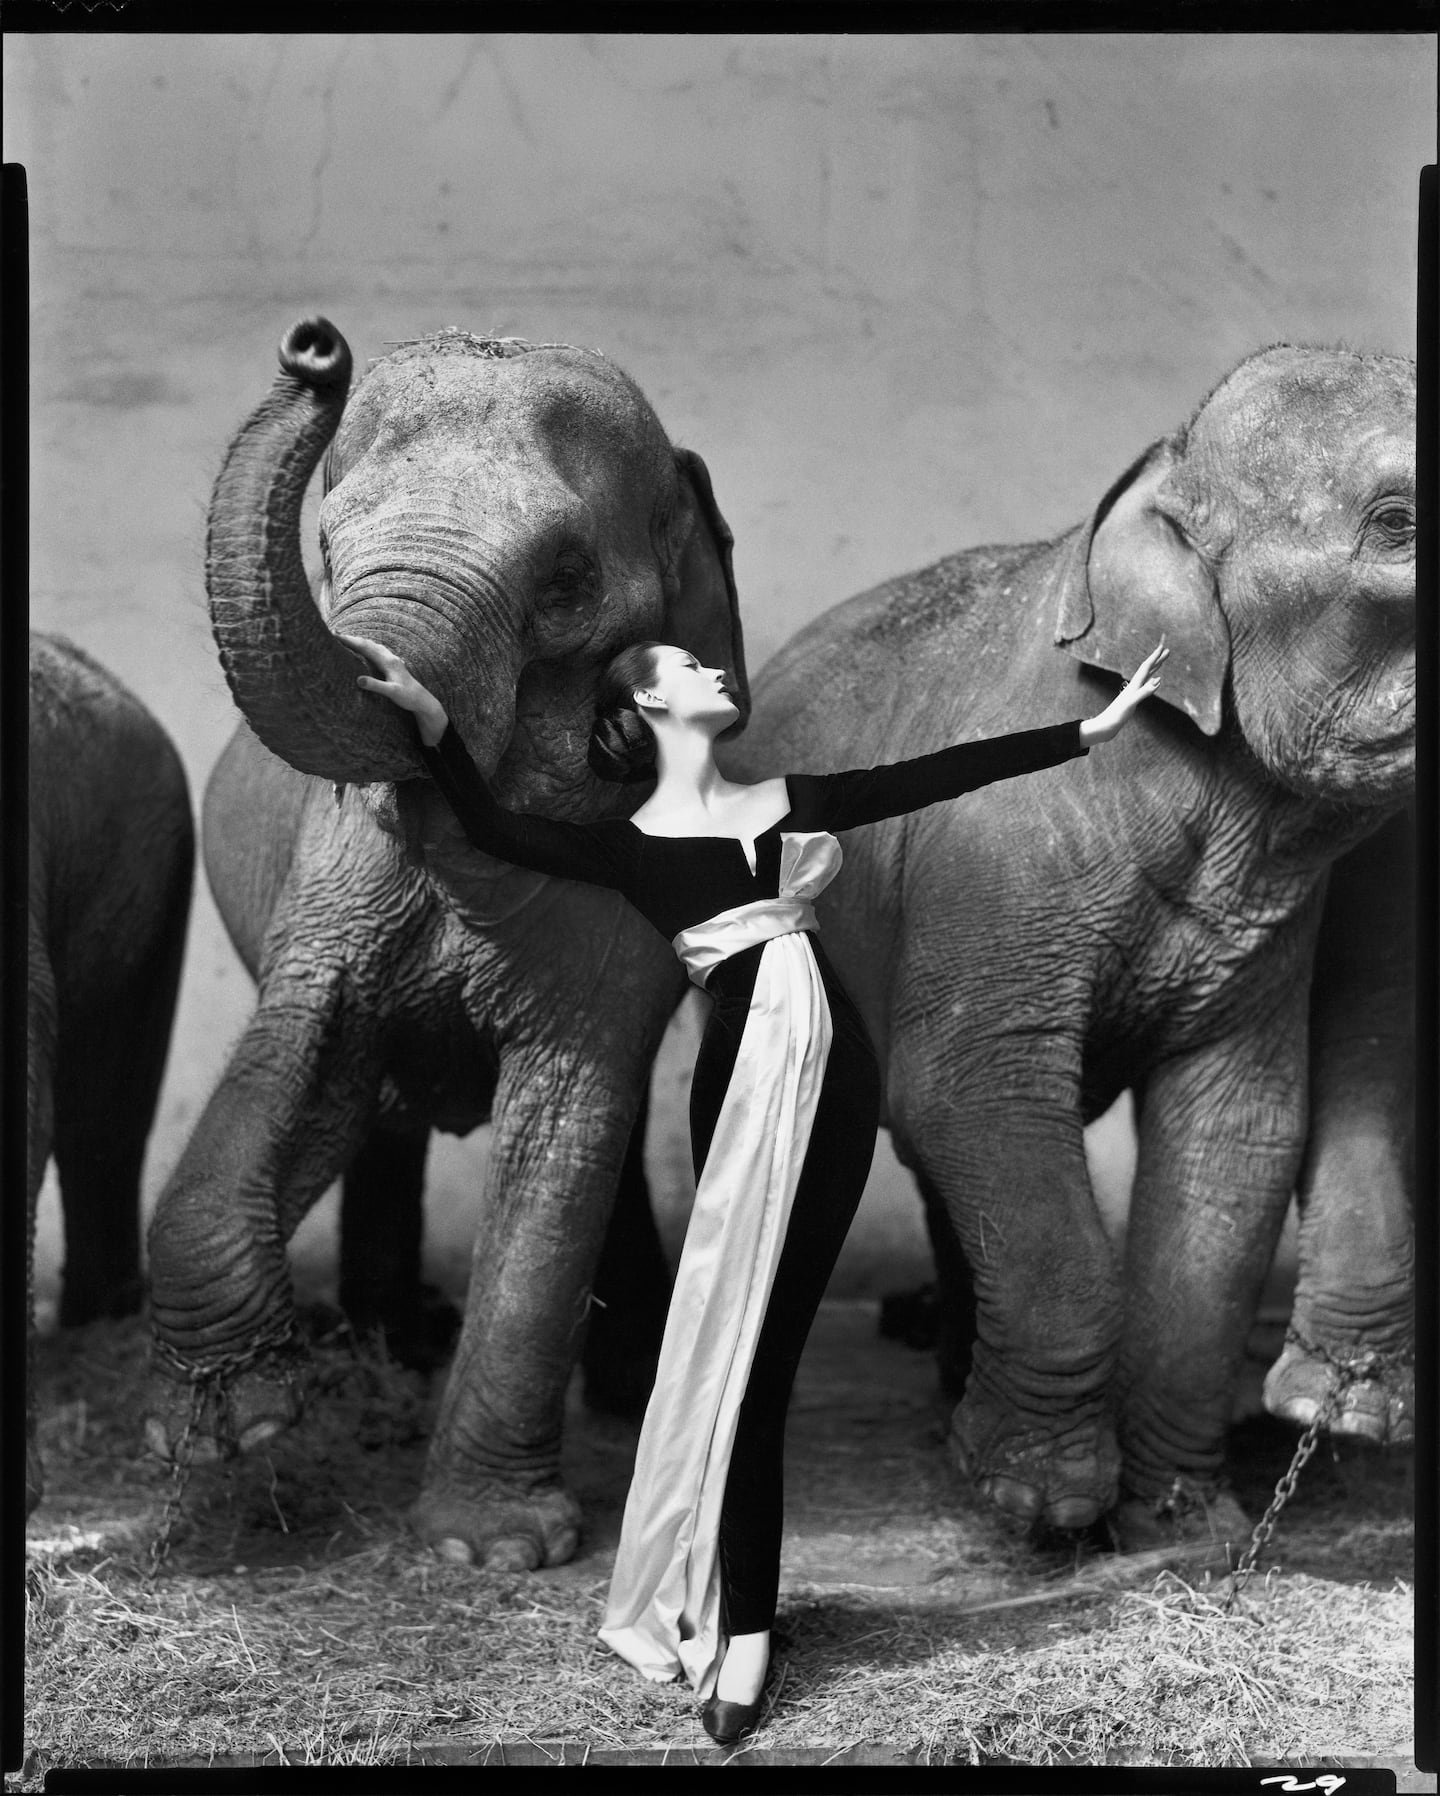 Dovima with Elephants, Cirque d'Hiver, Paris, August 1955.